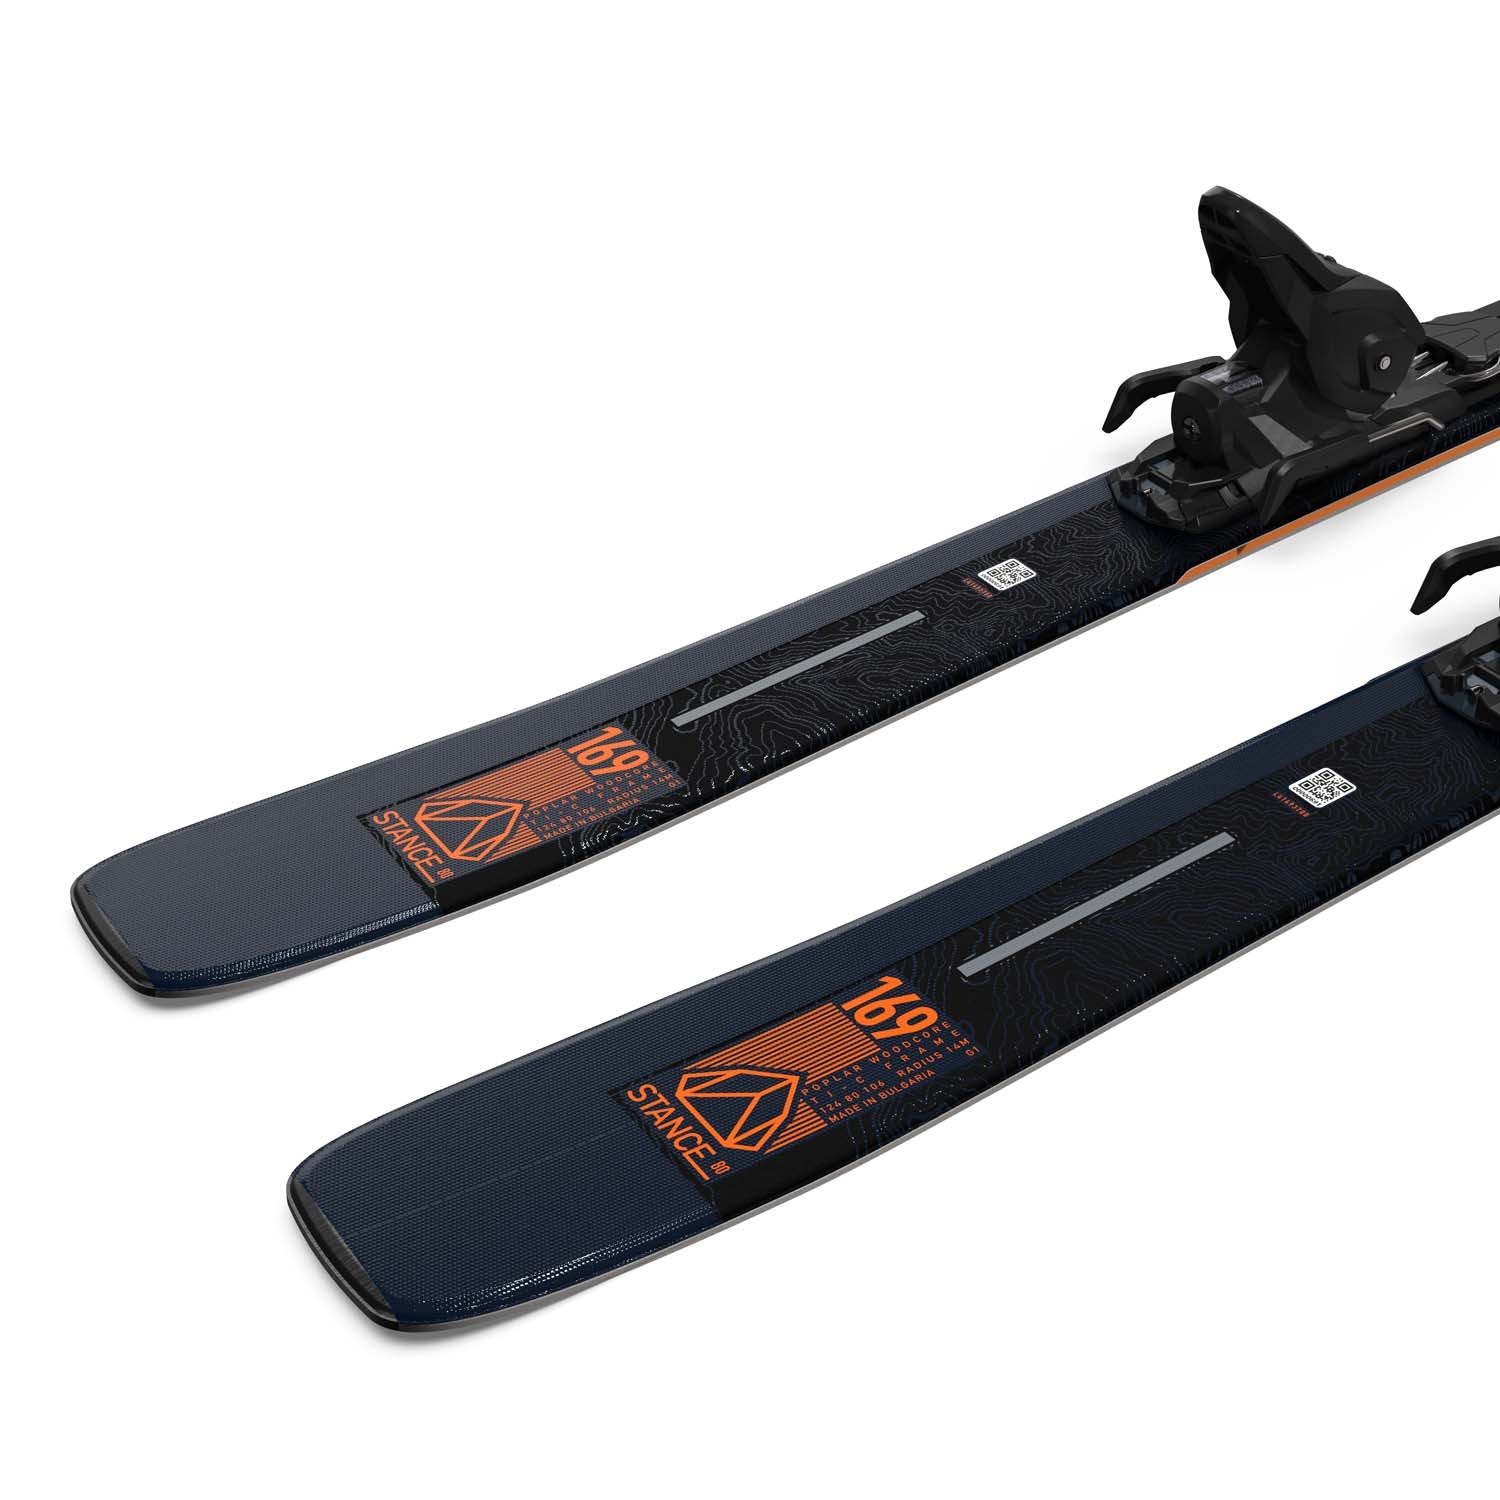 Salomon Stance 80 Skis M11 GW L80 Bindings 2022